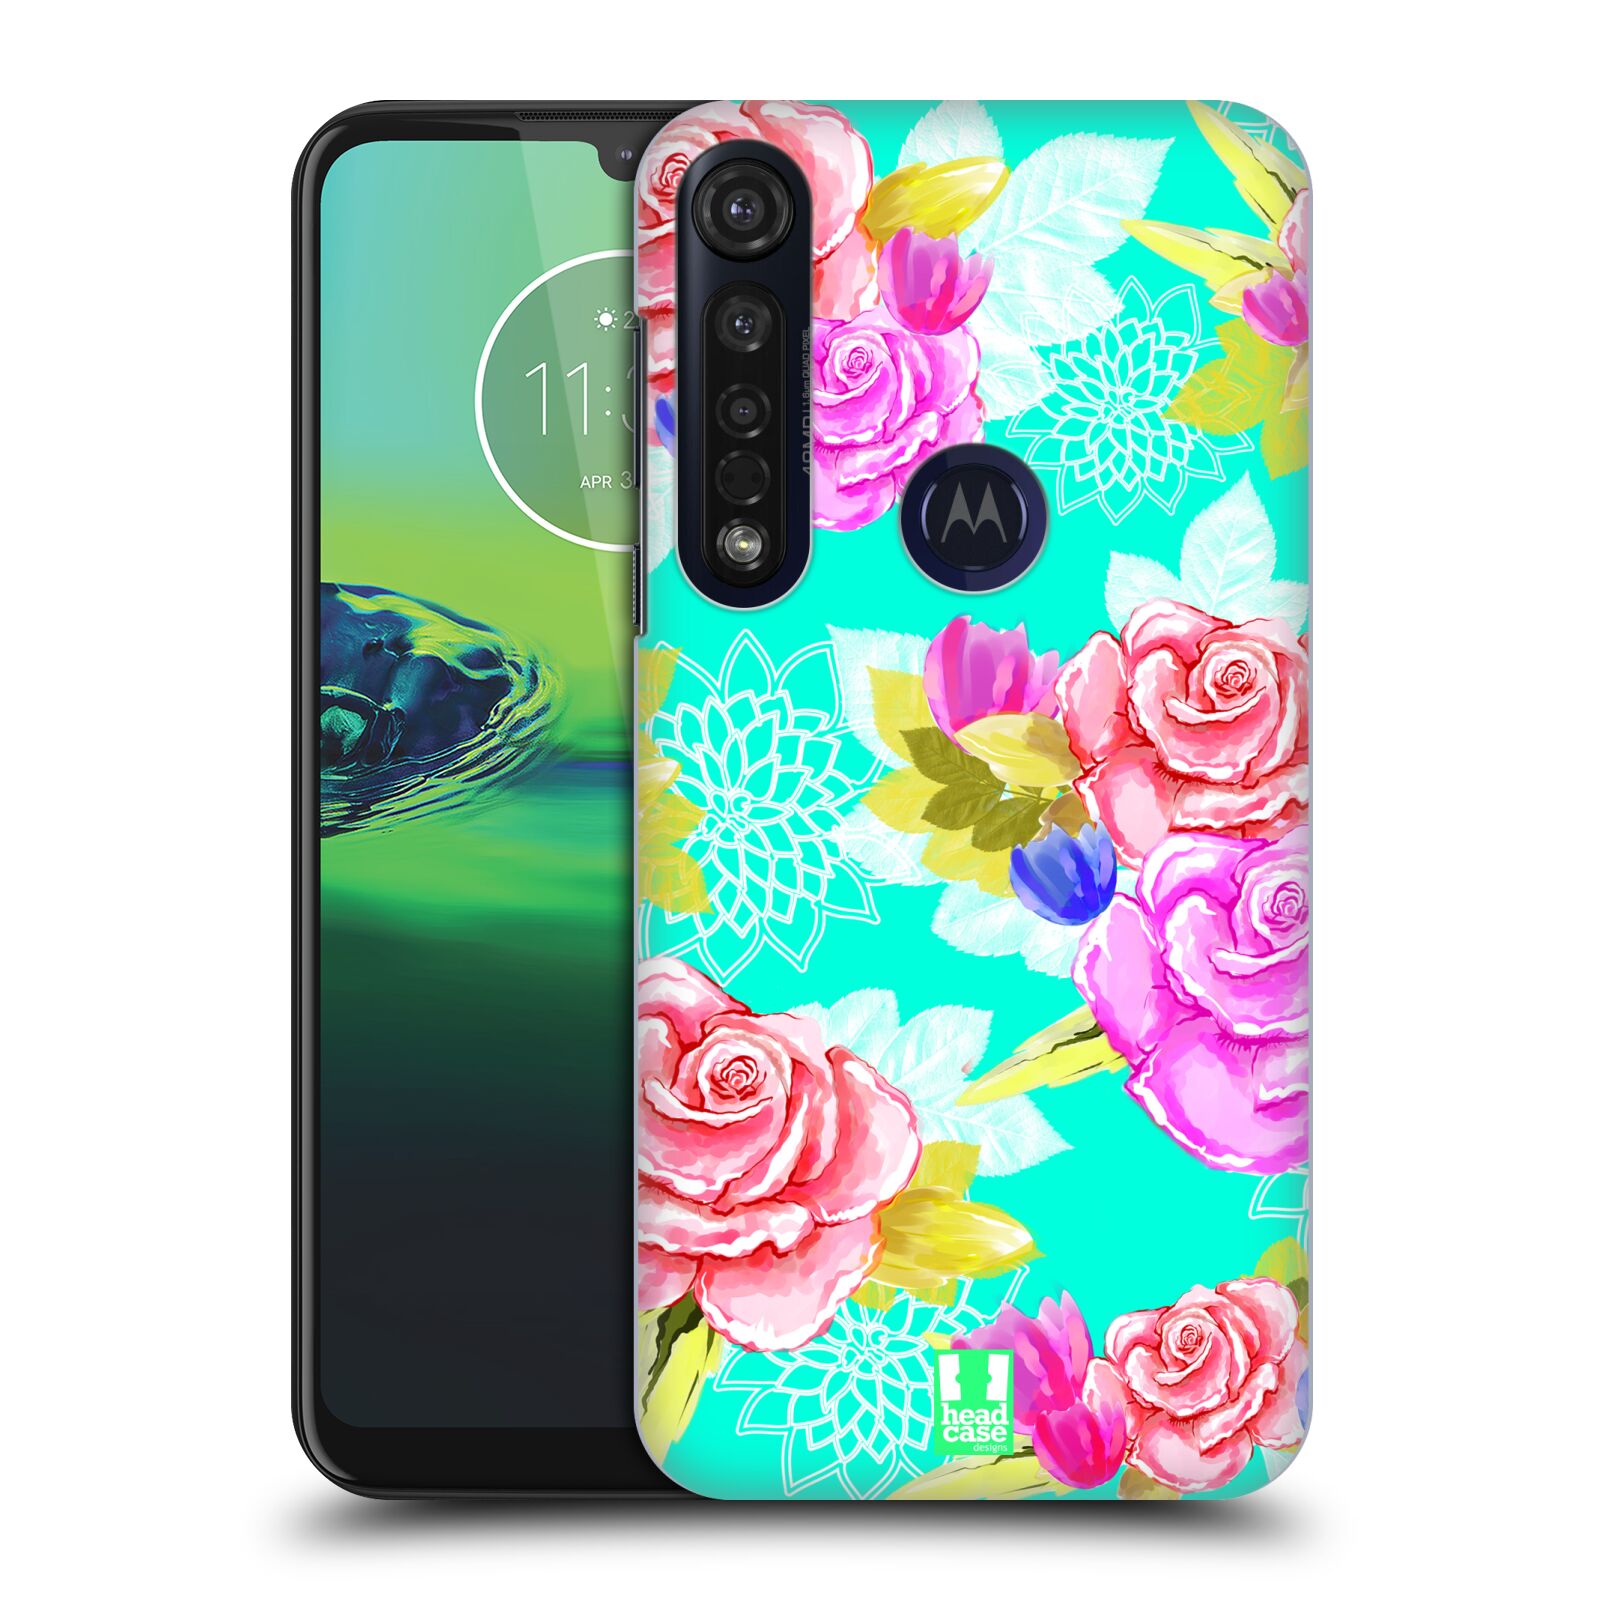 Pouzdro na mobil Motorola Moto G8 PLUS - HEAD CASE - vzor Malované květiny barevné AQUA MODRÁ